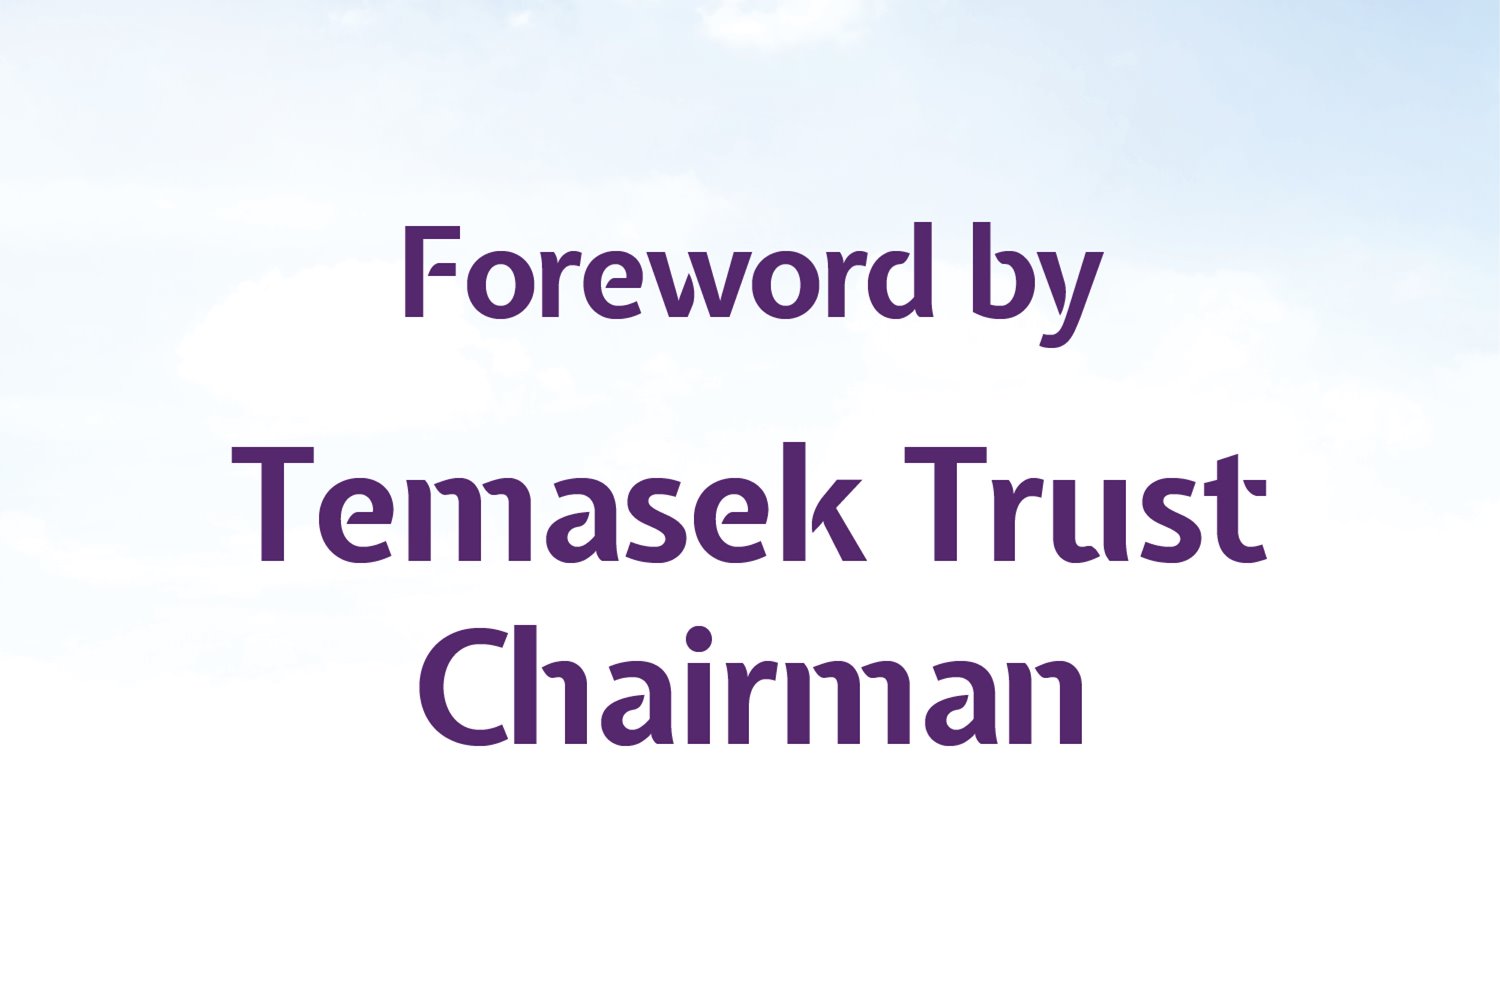 Foreword by Temasek Trust Chairman